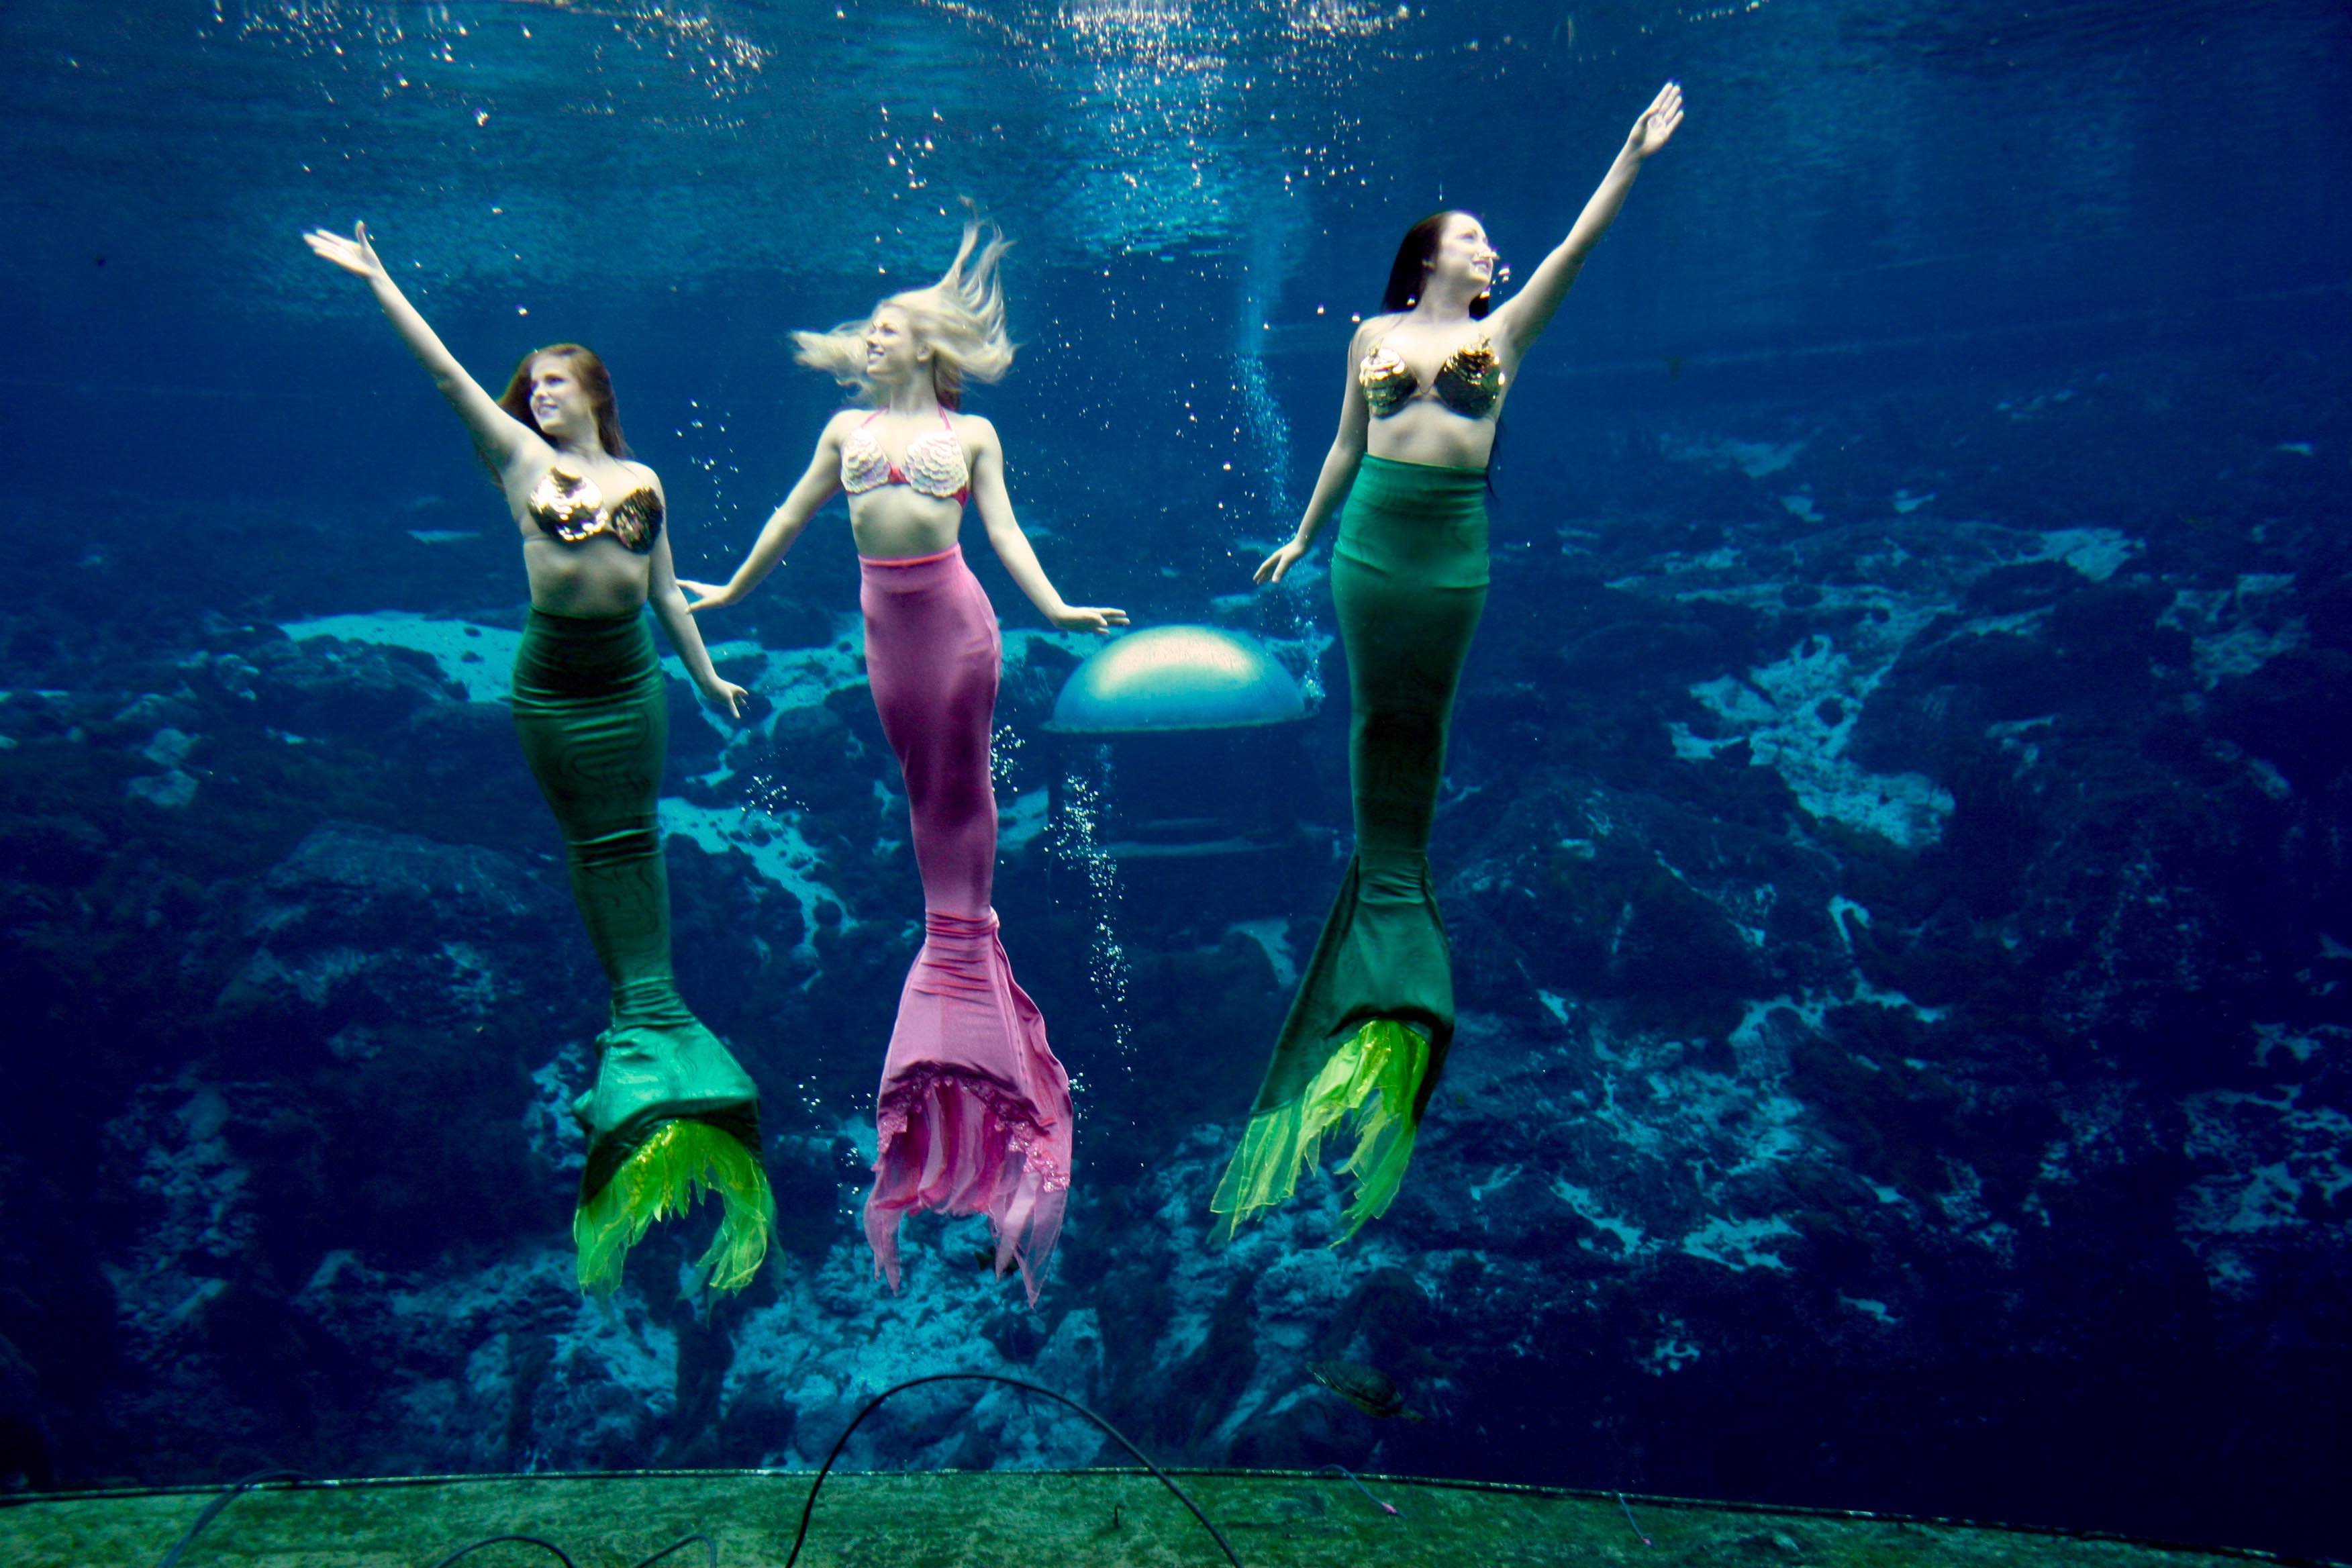 three mermaids of weeki wachee springs performing